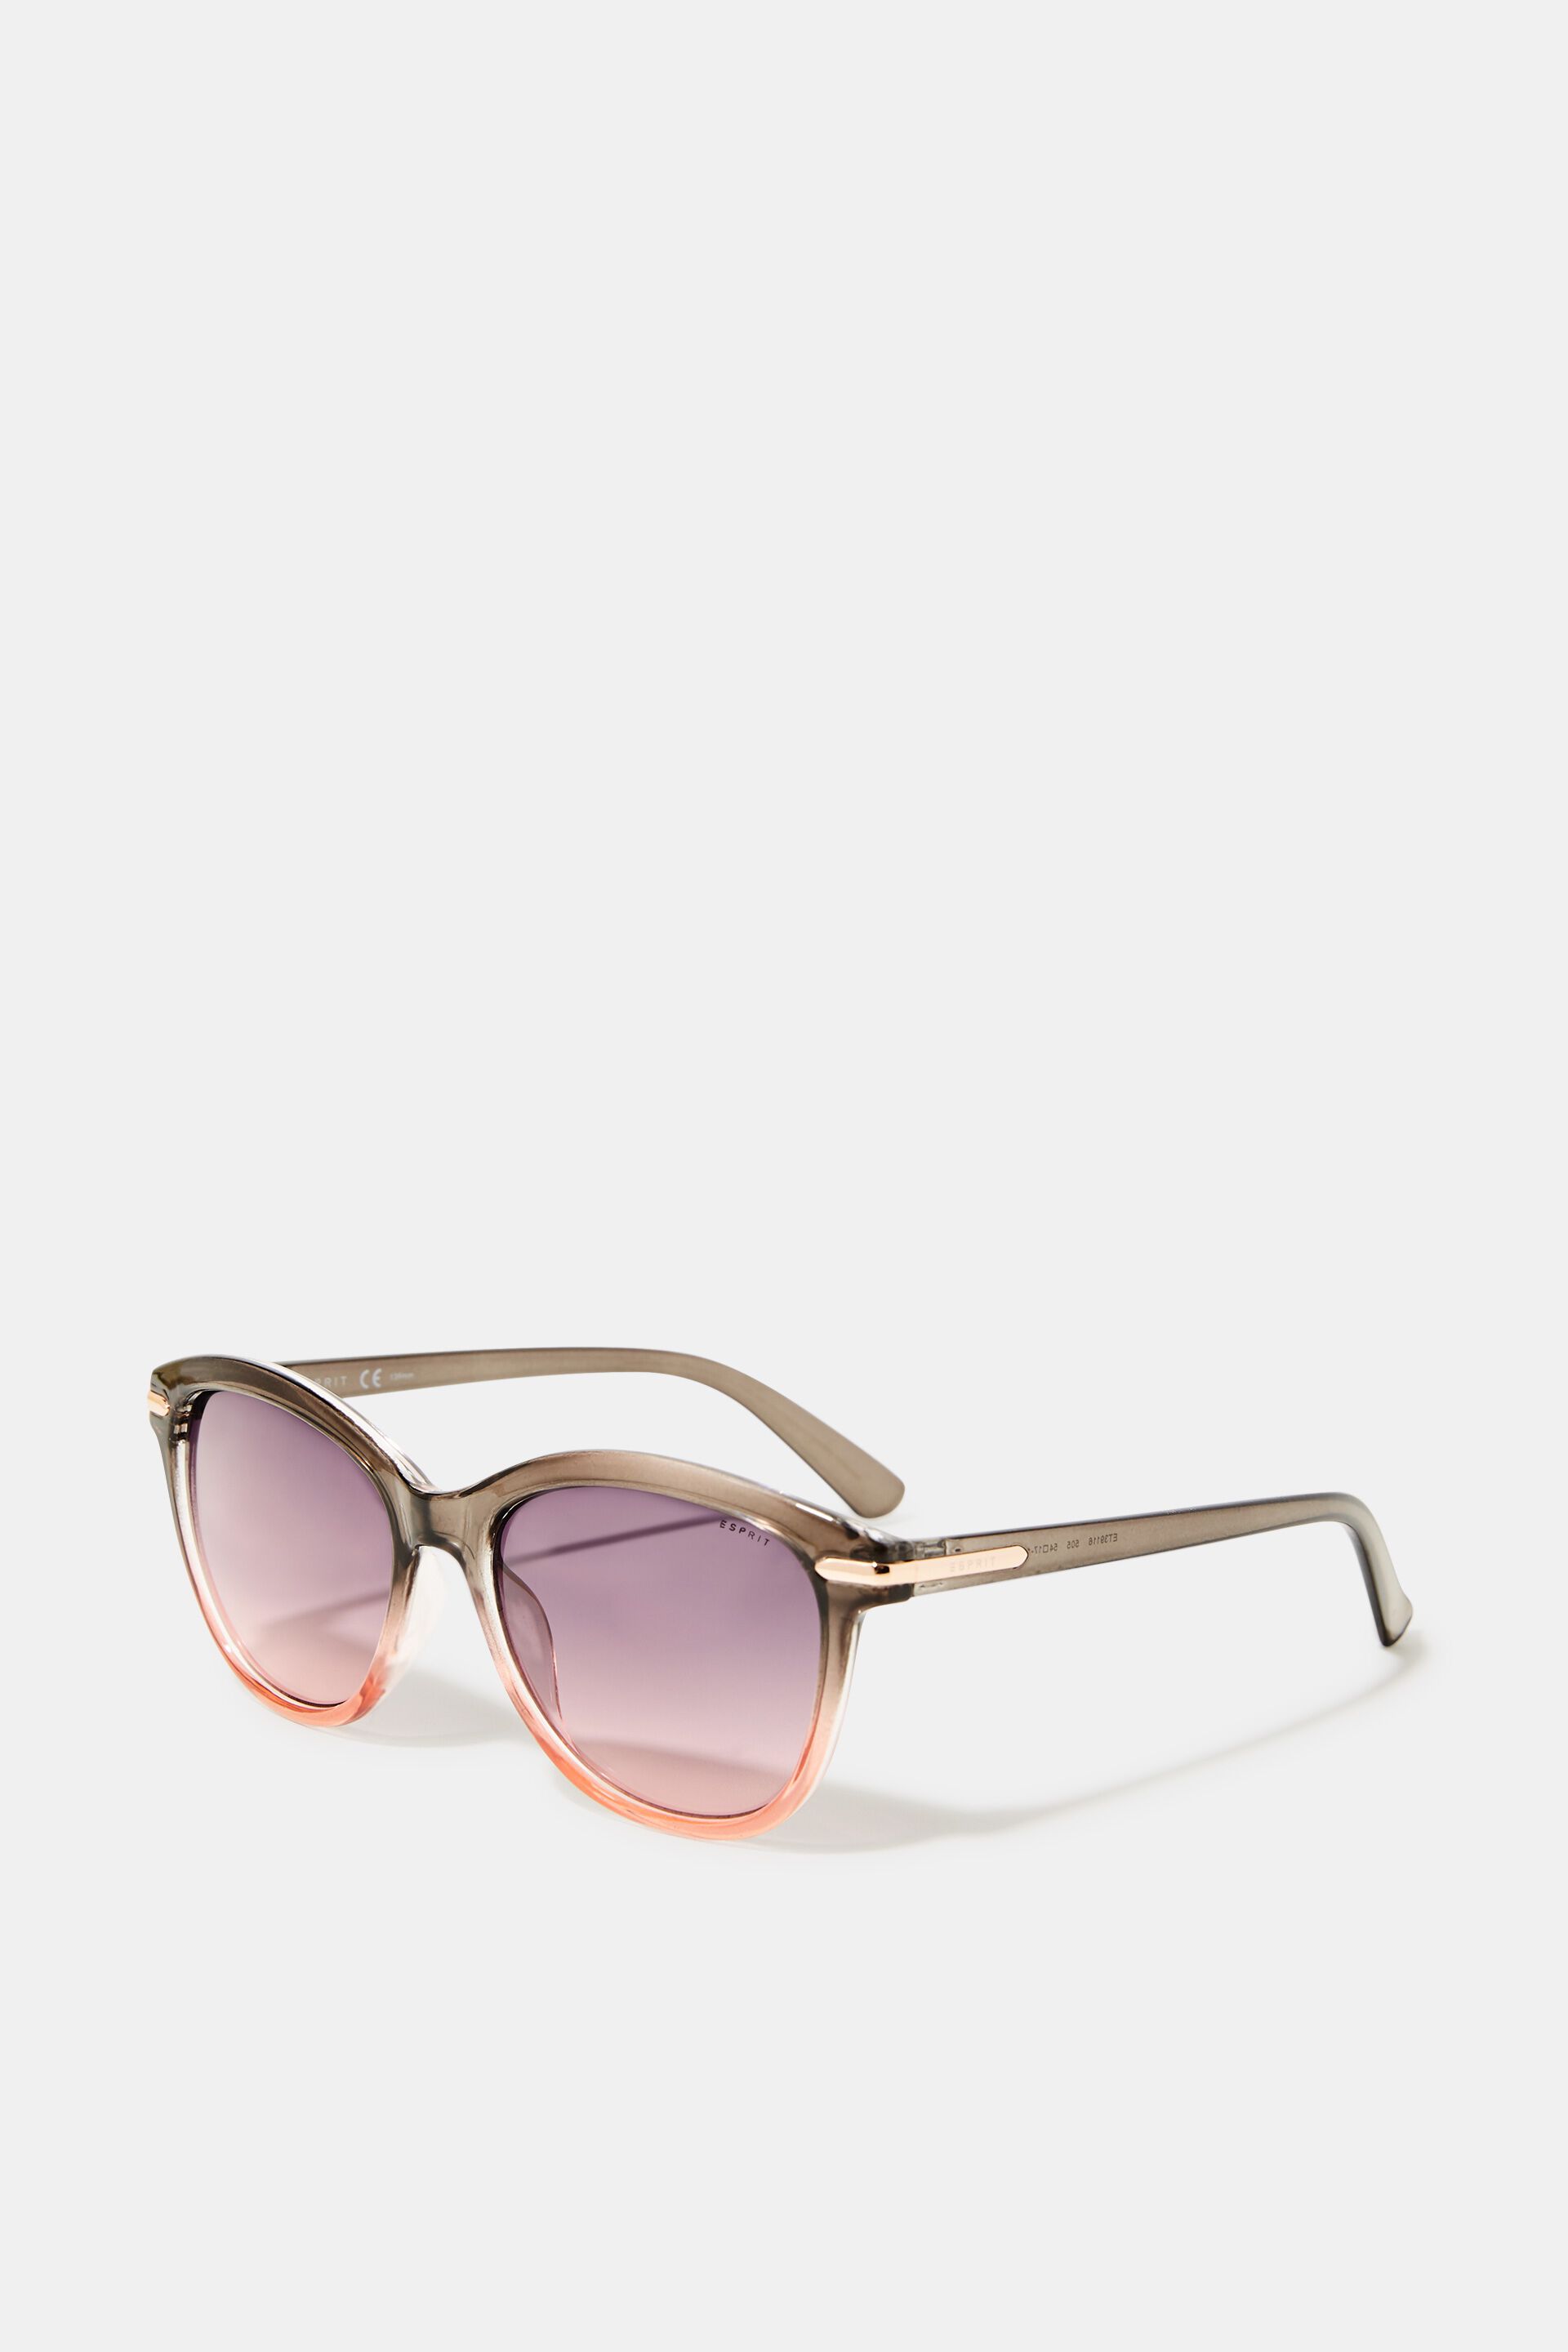 Esprit colour Graduated sunglasses